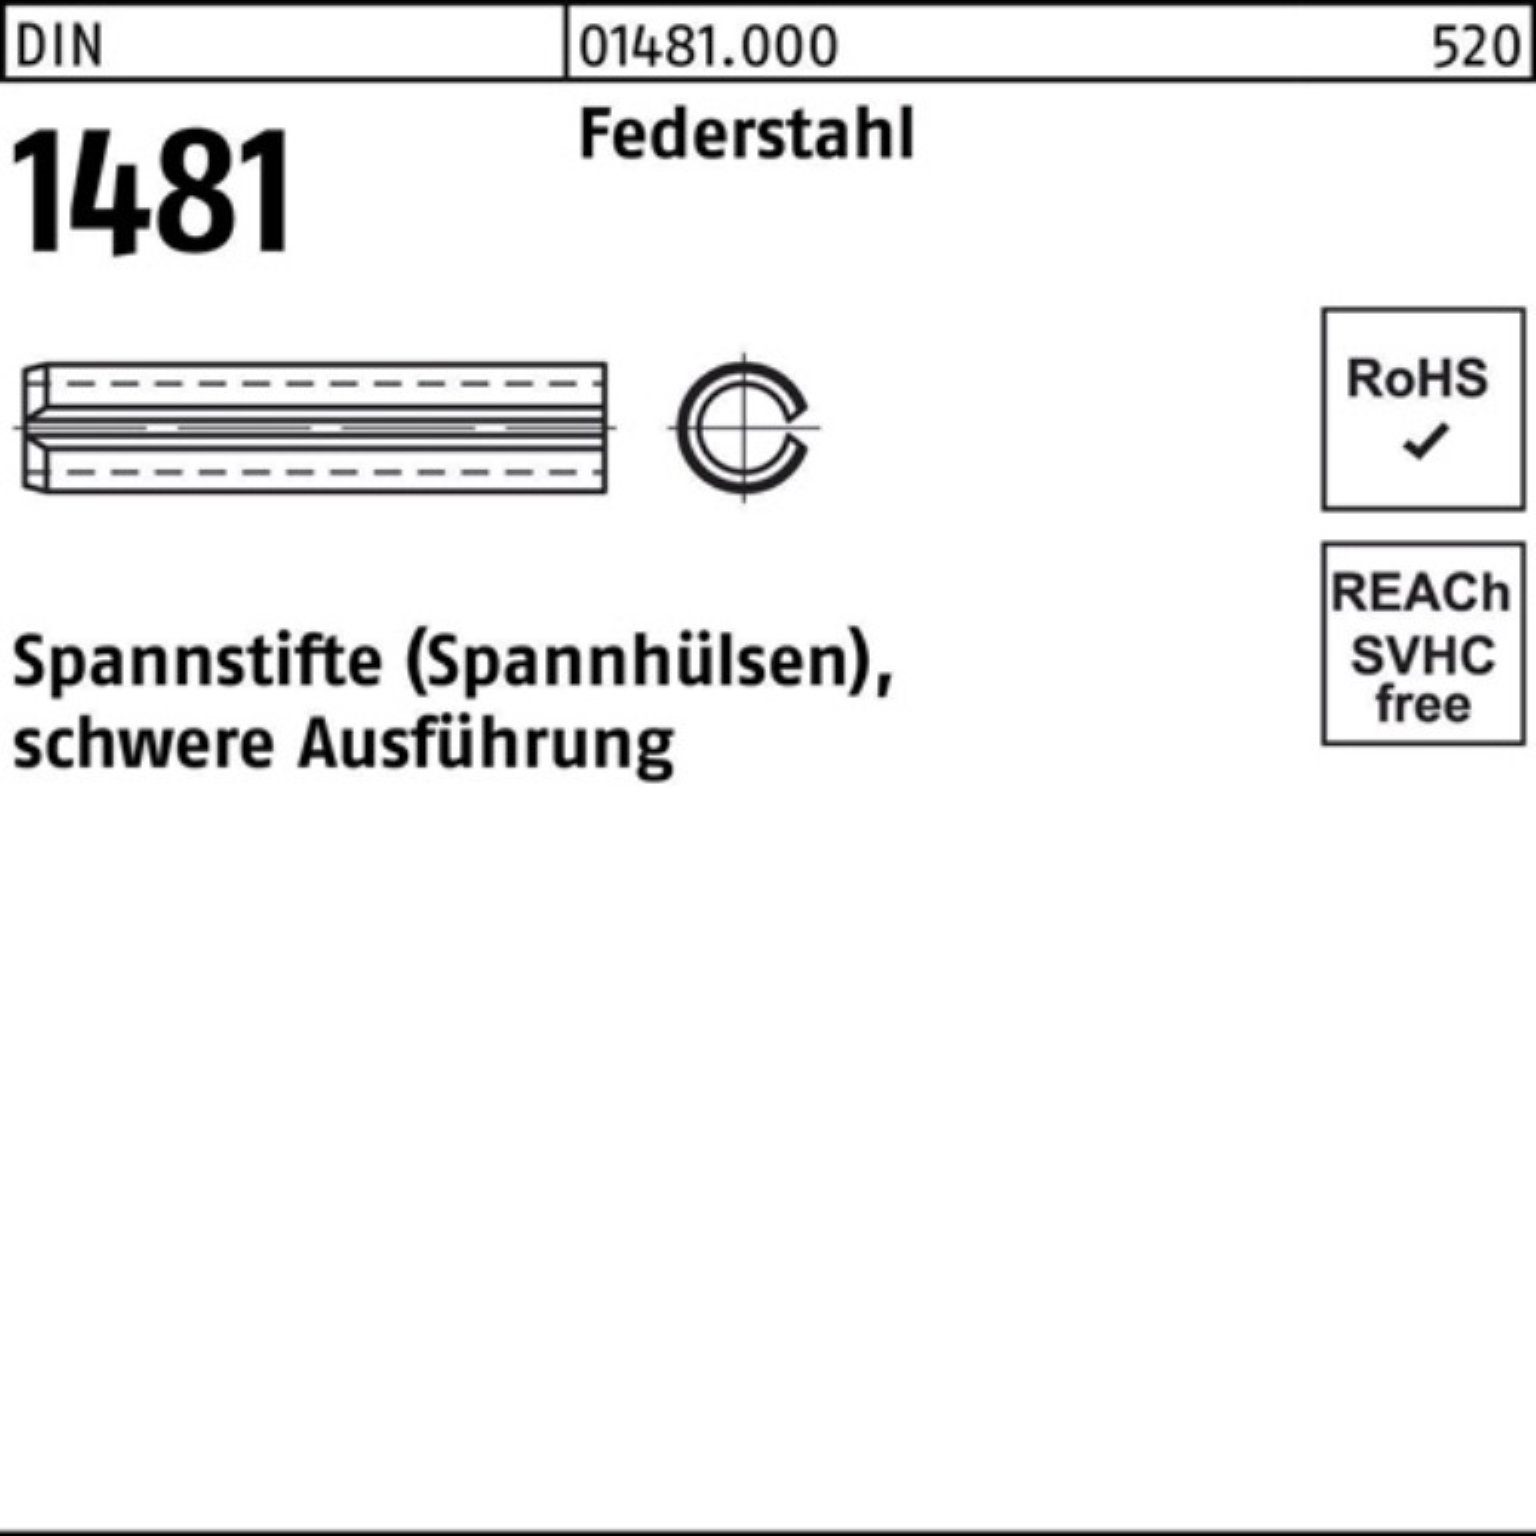 Reyher Spannstift 100er Pack Spannstift schwere 1481 1 DIN Ausführung 24 10x Federstahl